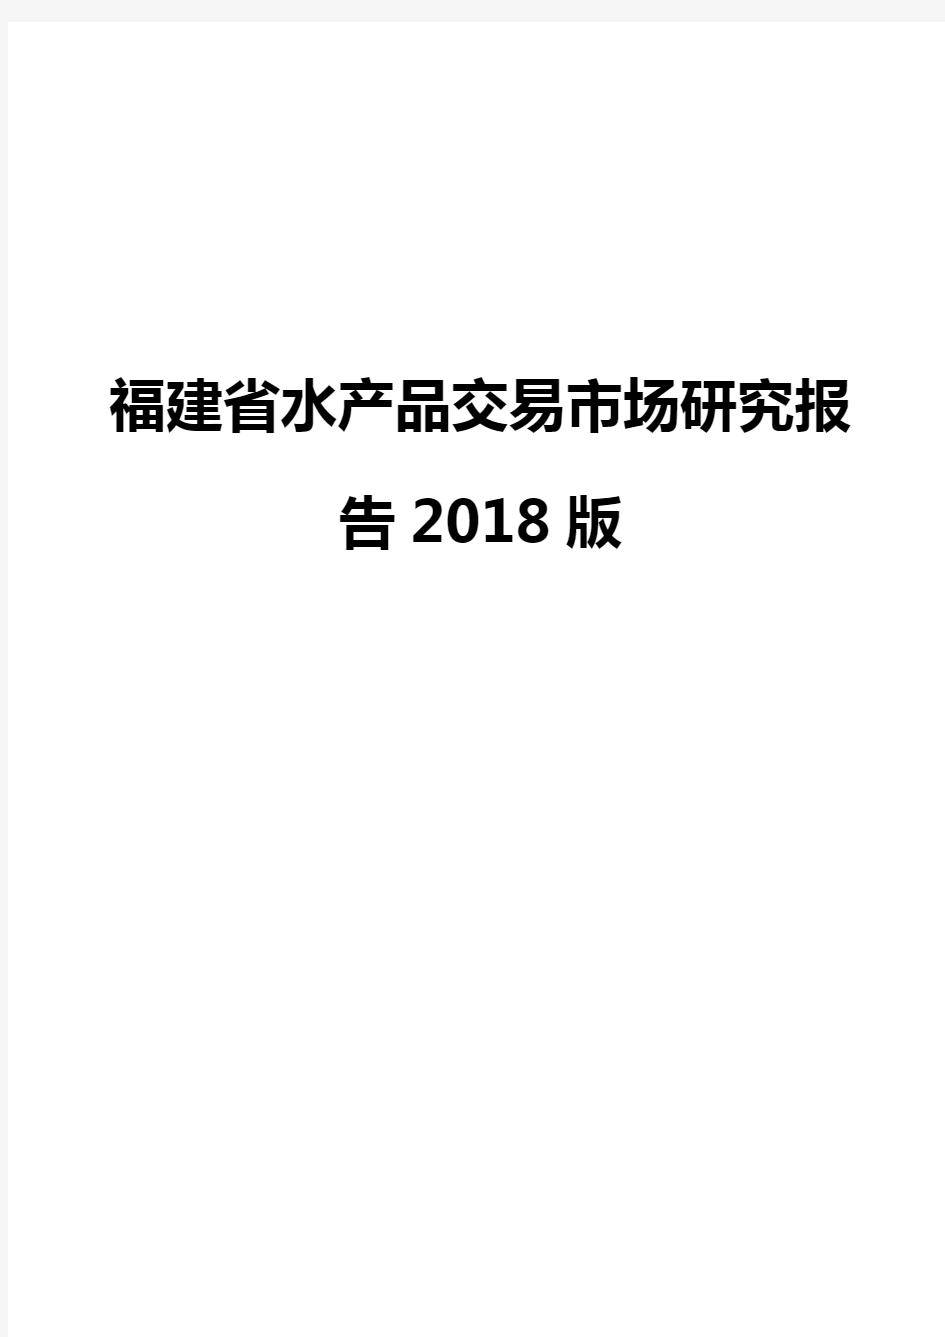 福建省水产品交易市场研究报告2018版